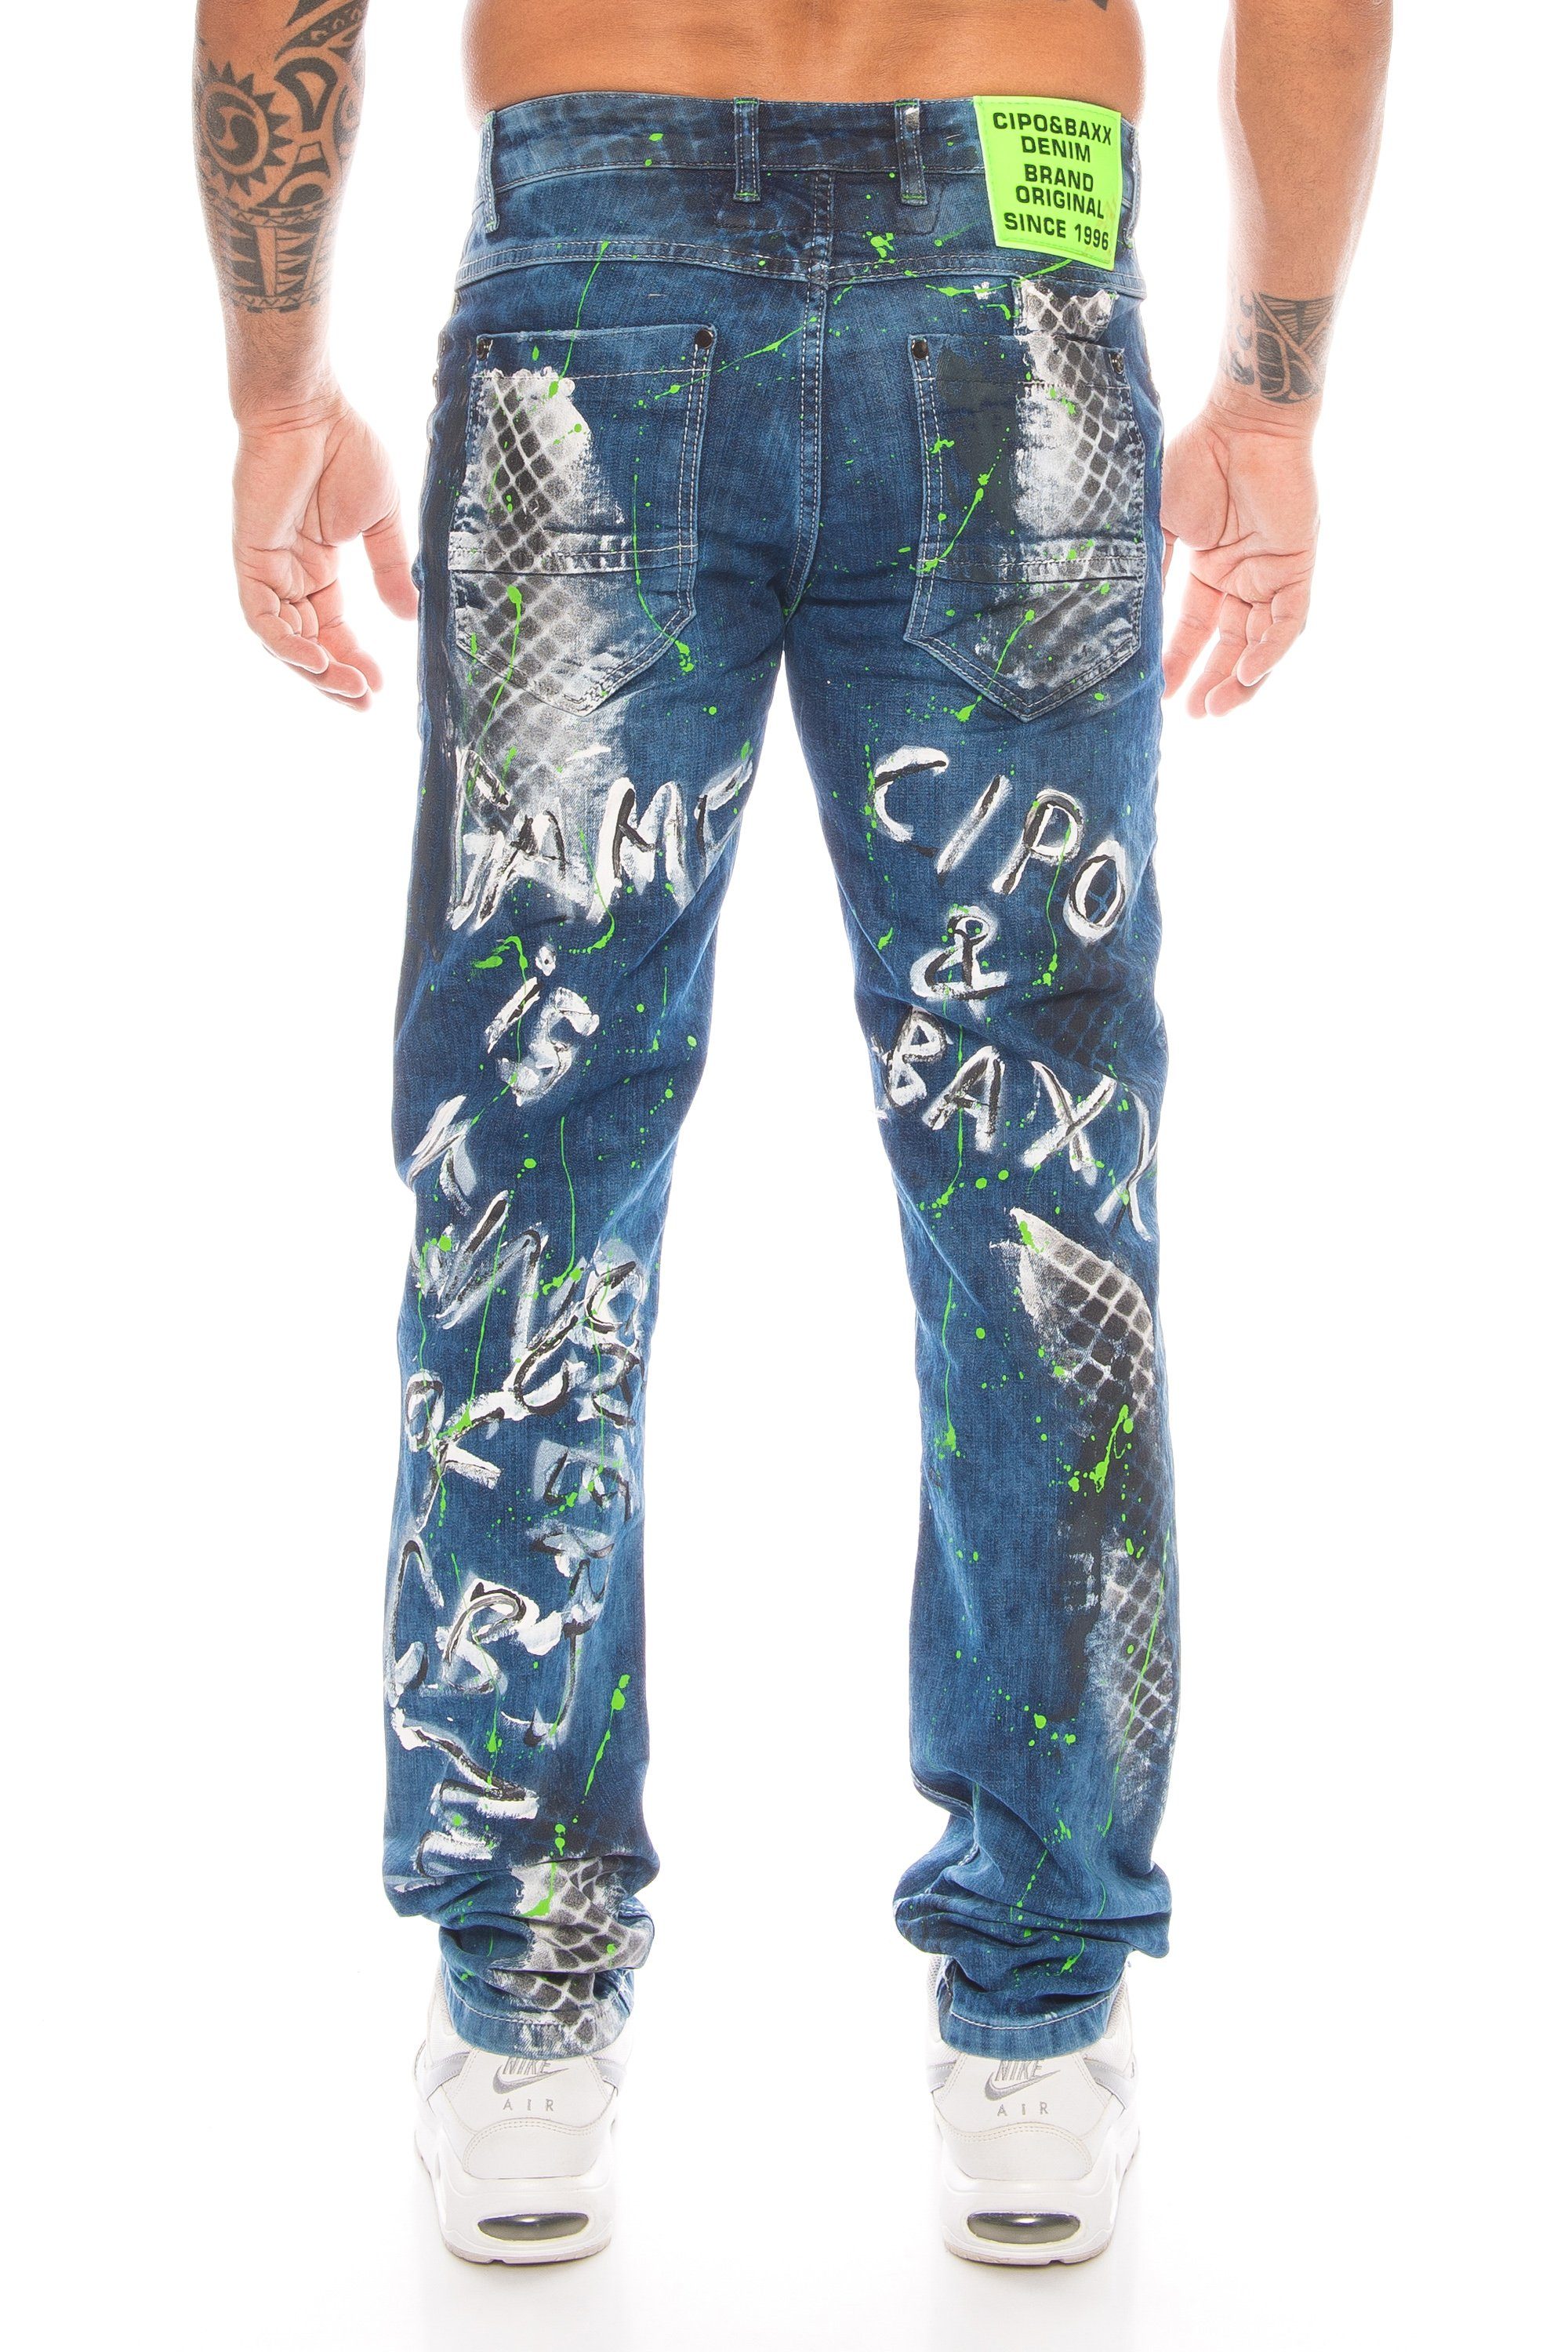 Cipo & Baxx Slim-fit-Jeans »Herren Jeans Hose mit ausgefallenem Graffiti  Design« Aufwendige Verarbeitung mit Nieten und neongrünen Details